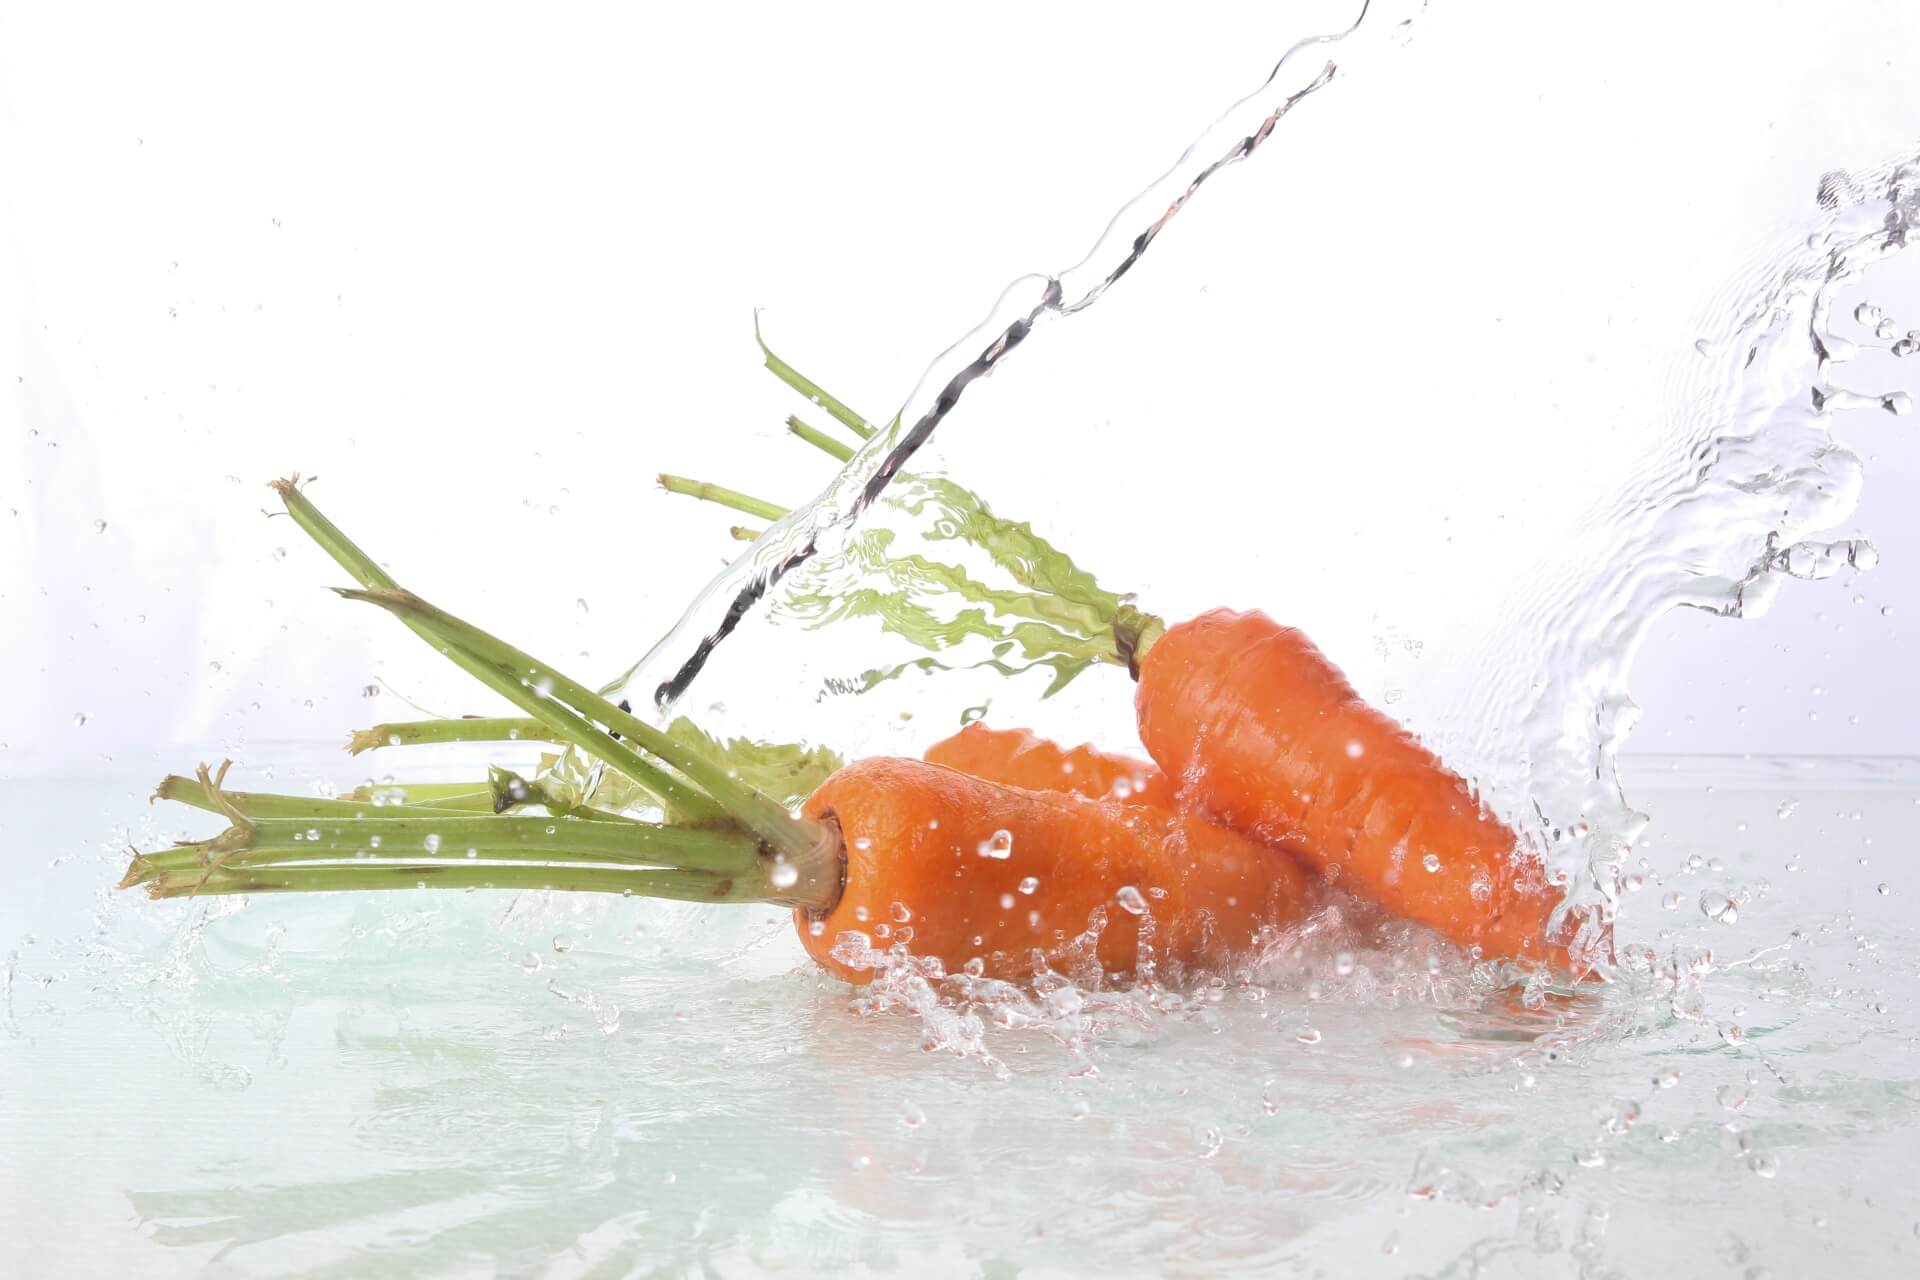 野菜や果物の洗浄・殺菌を意識して食中毒予防